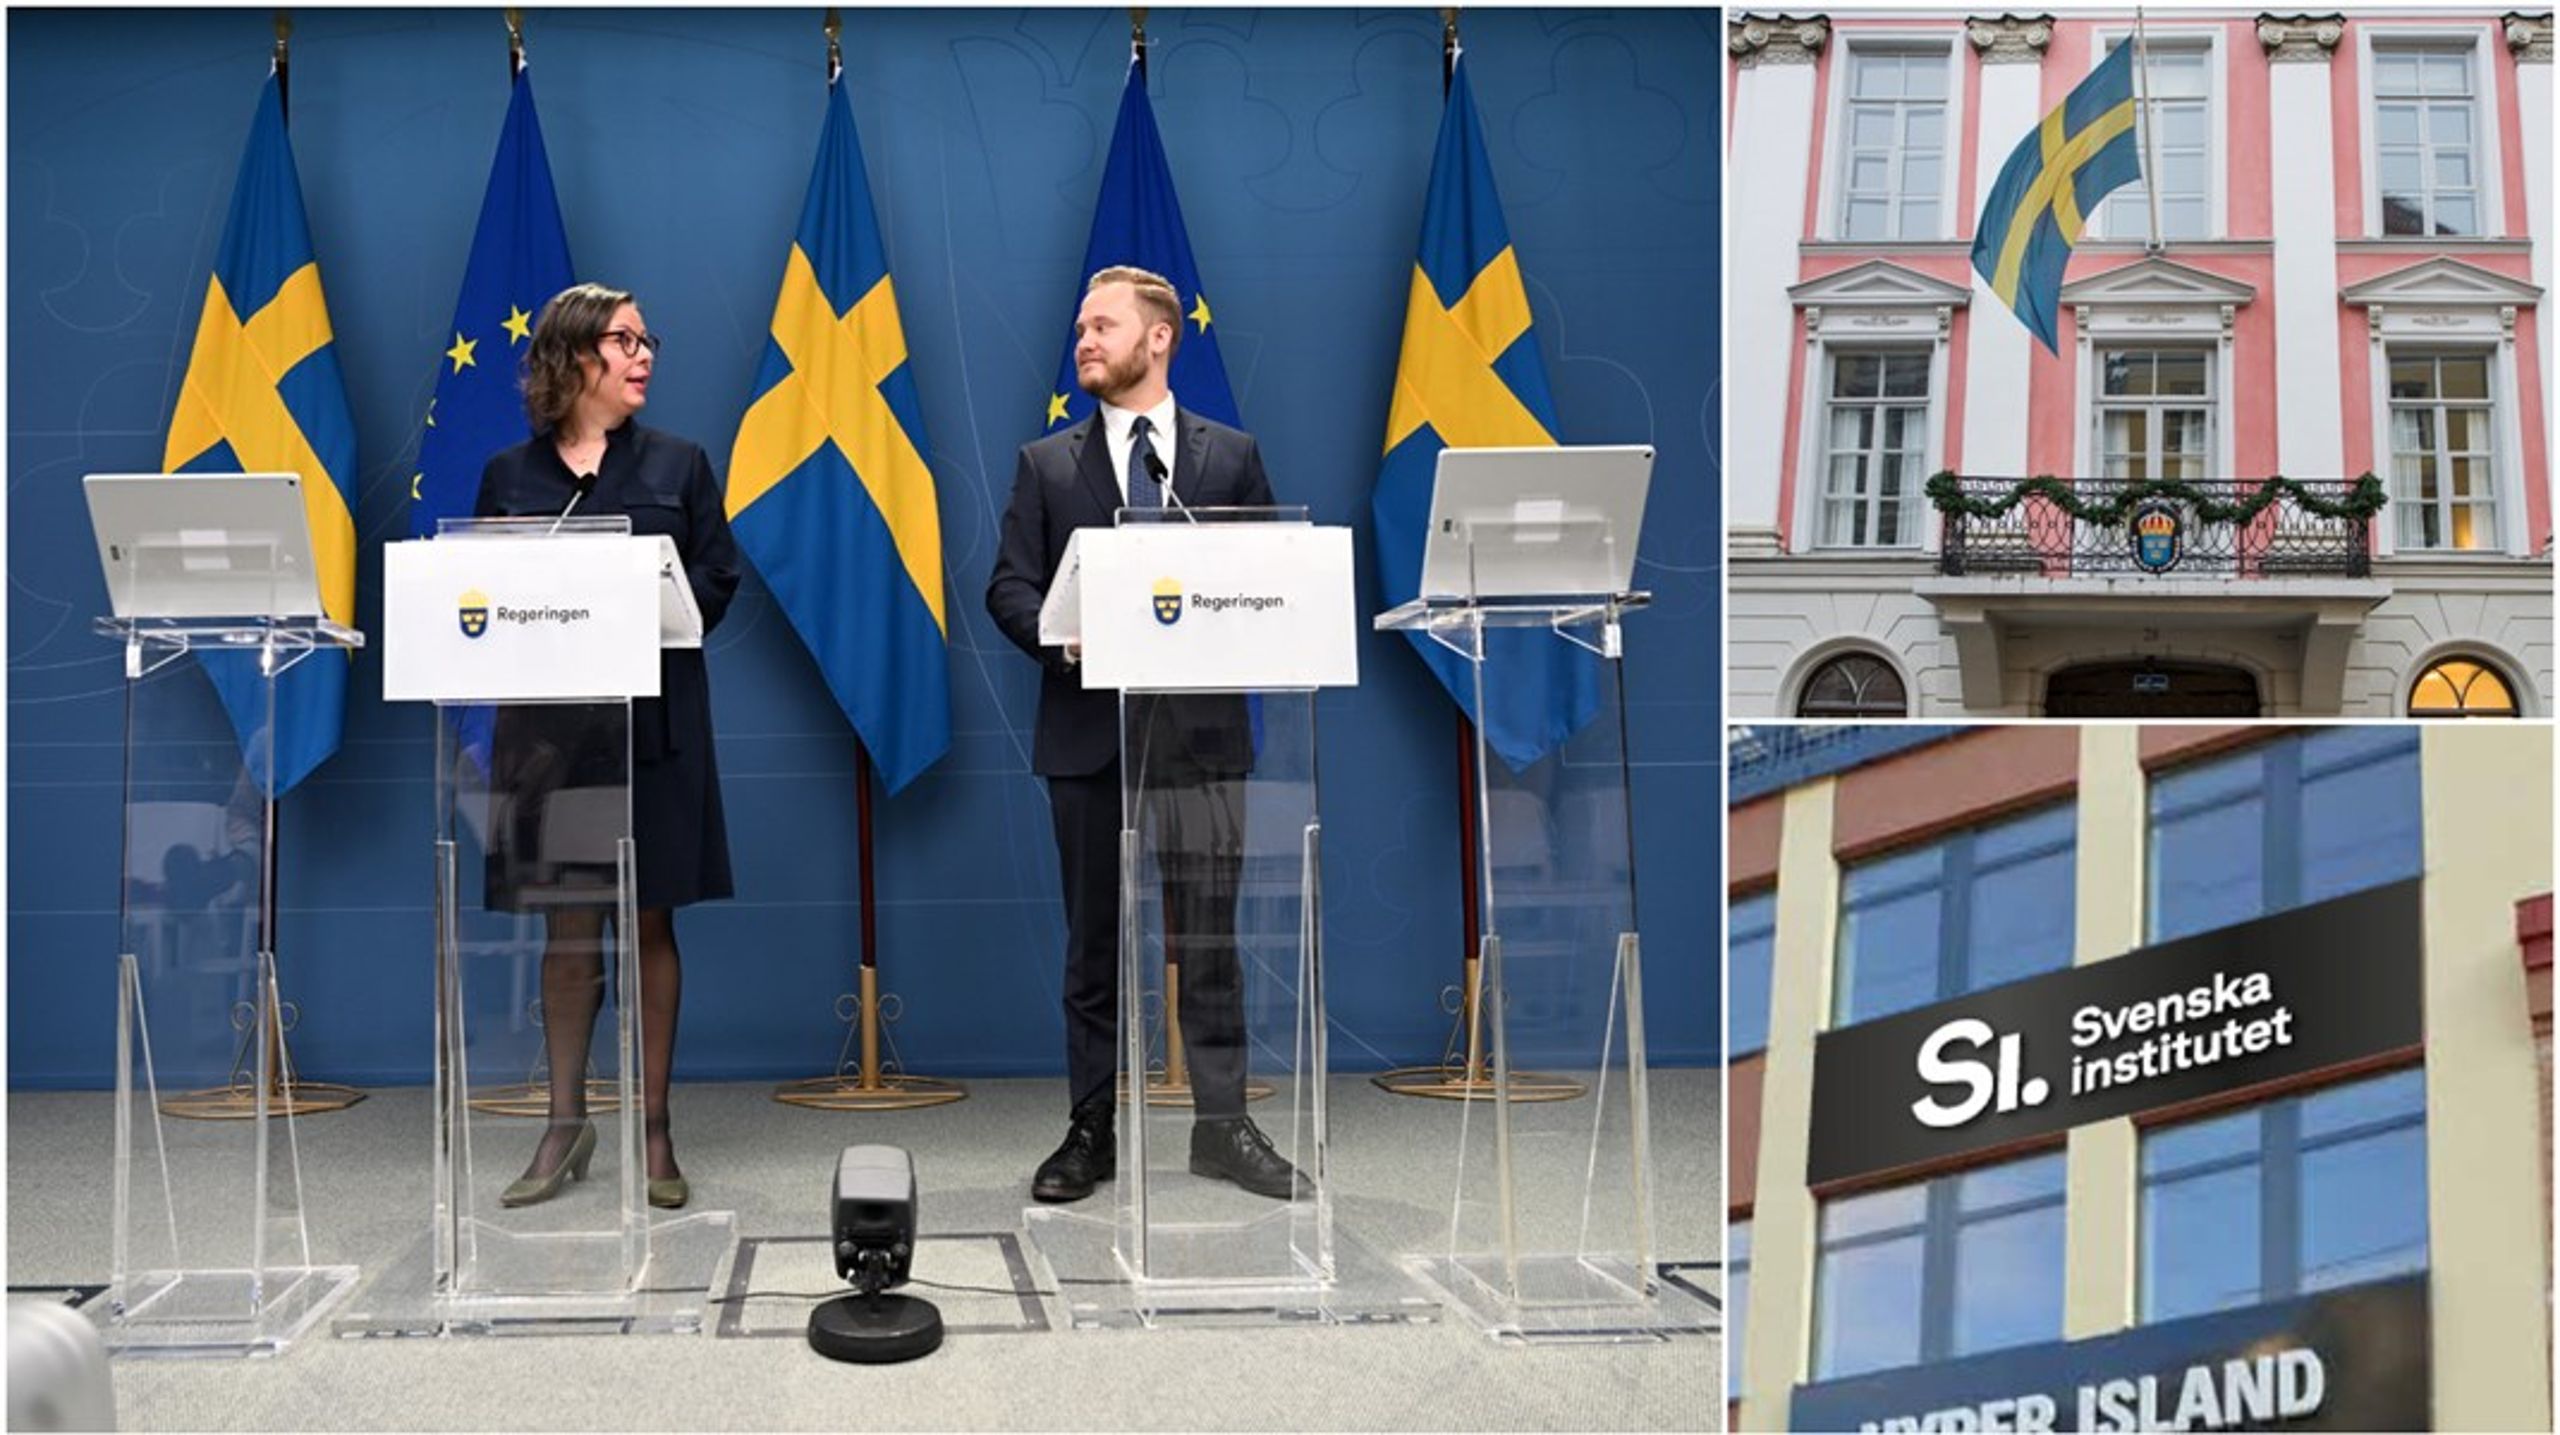 Regeringen och SD vill nå ut internationellt med Sveriges ”nya migrationspolitik”, bland annat genom ambassaderna och Svenska institutet.